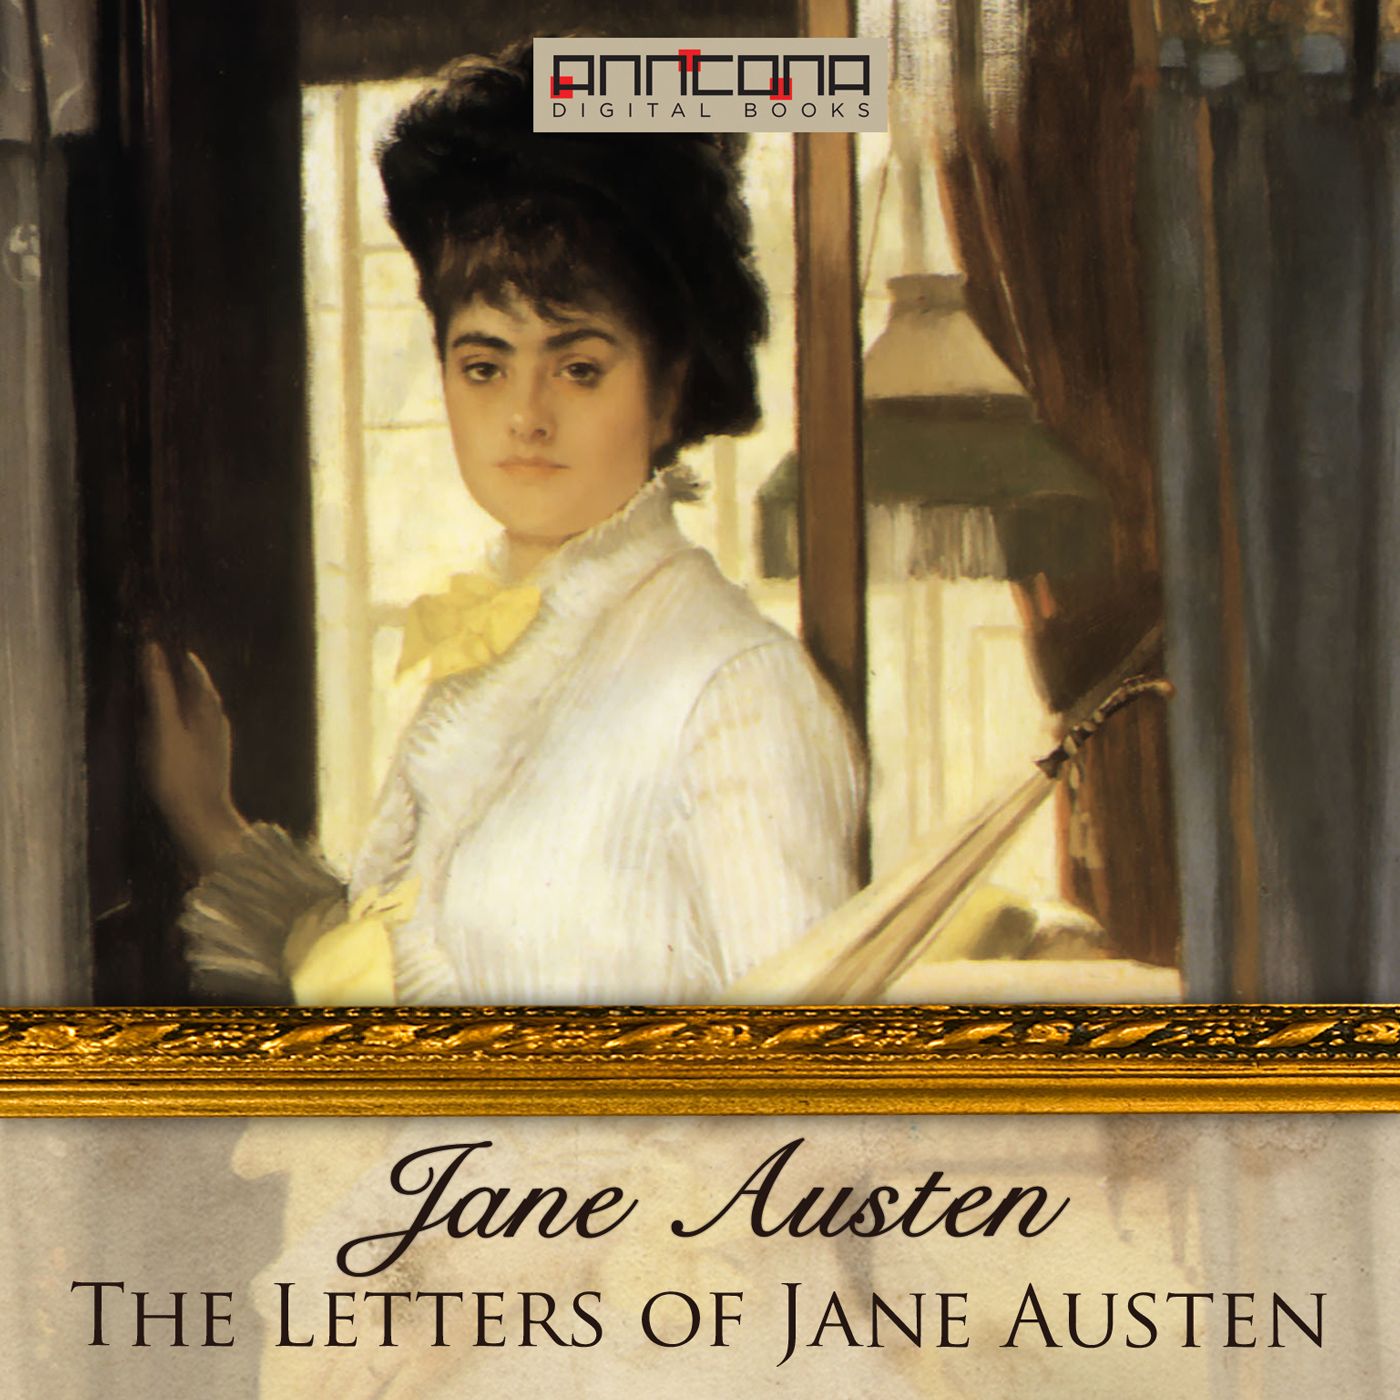 The Letters of Jane Austen, lydbog af Jane Austen